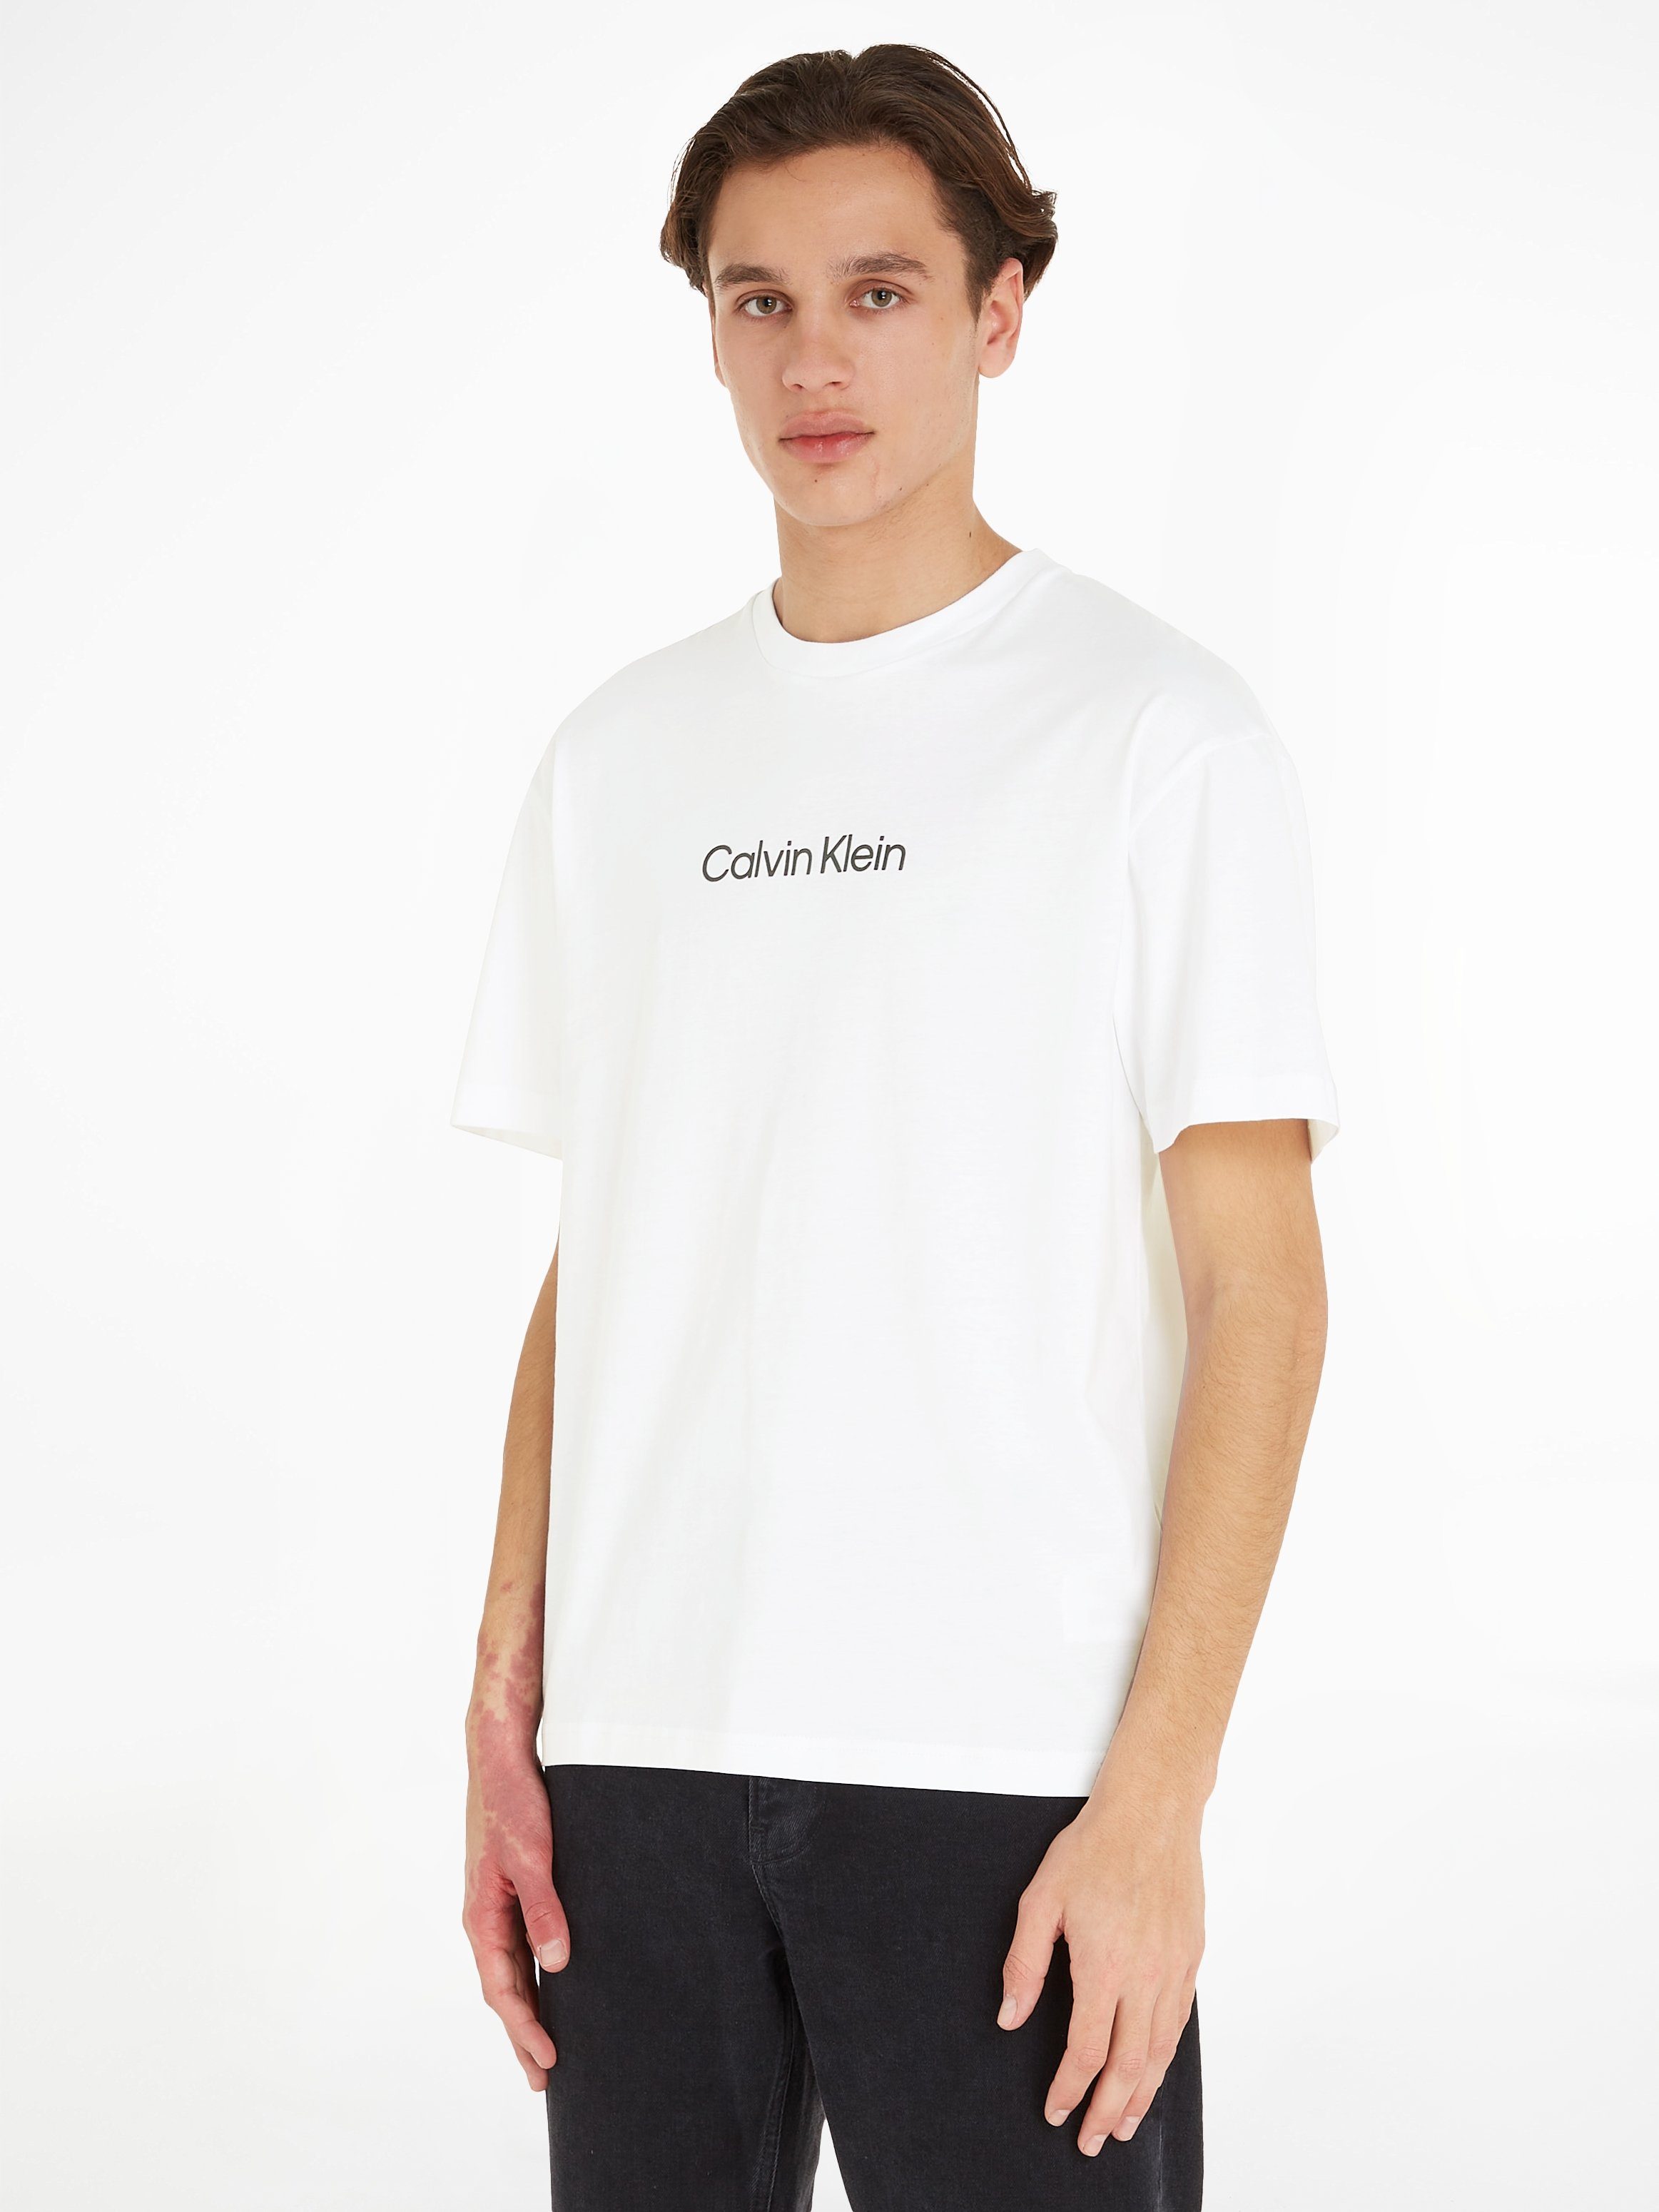 [Weniger als die Hälfte! Kostenloser Versand] Calvin Klein T-Shirt Markenlabel White Bright LOGO aufgedrucktem HERO mit COMFORT T-SHIRT